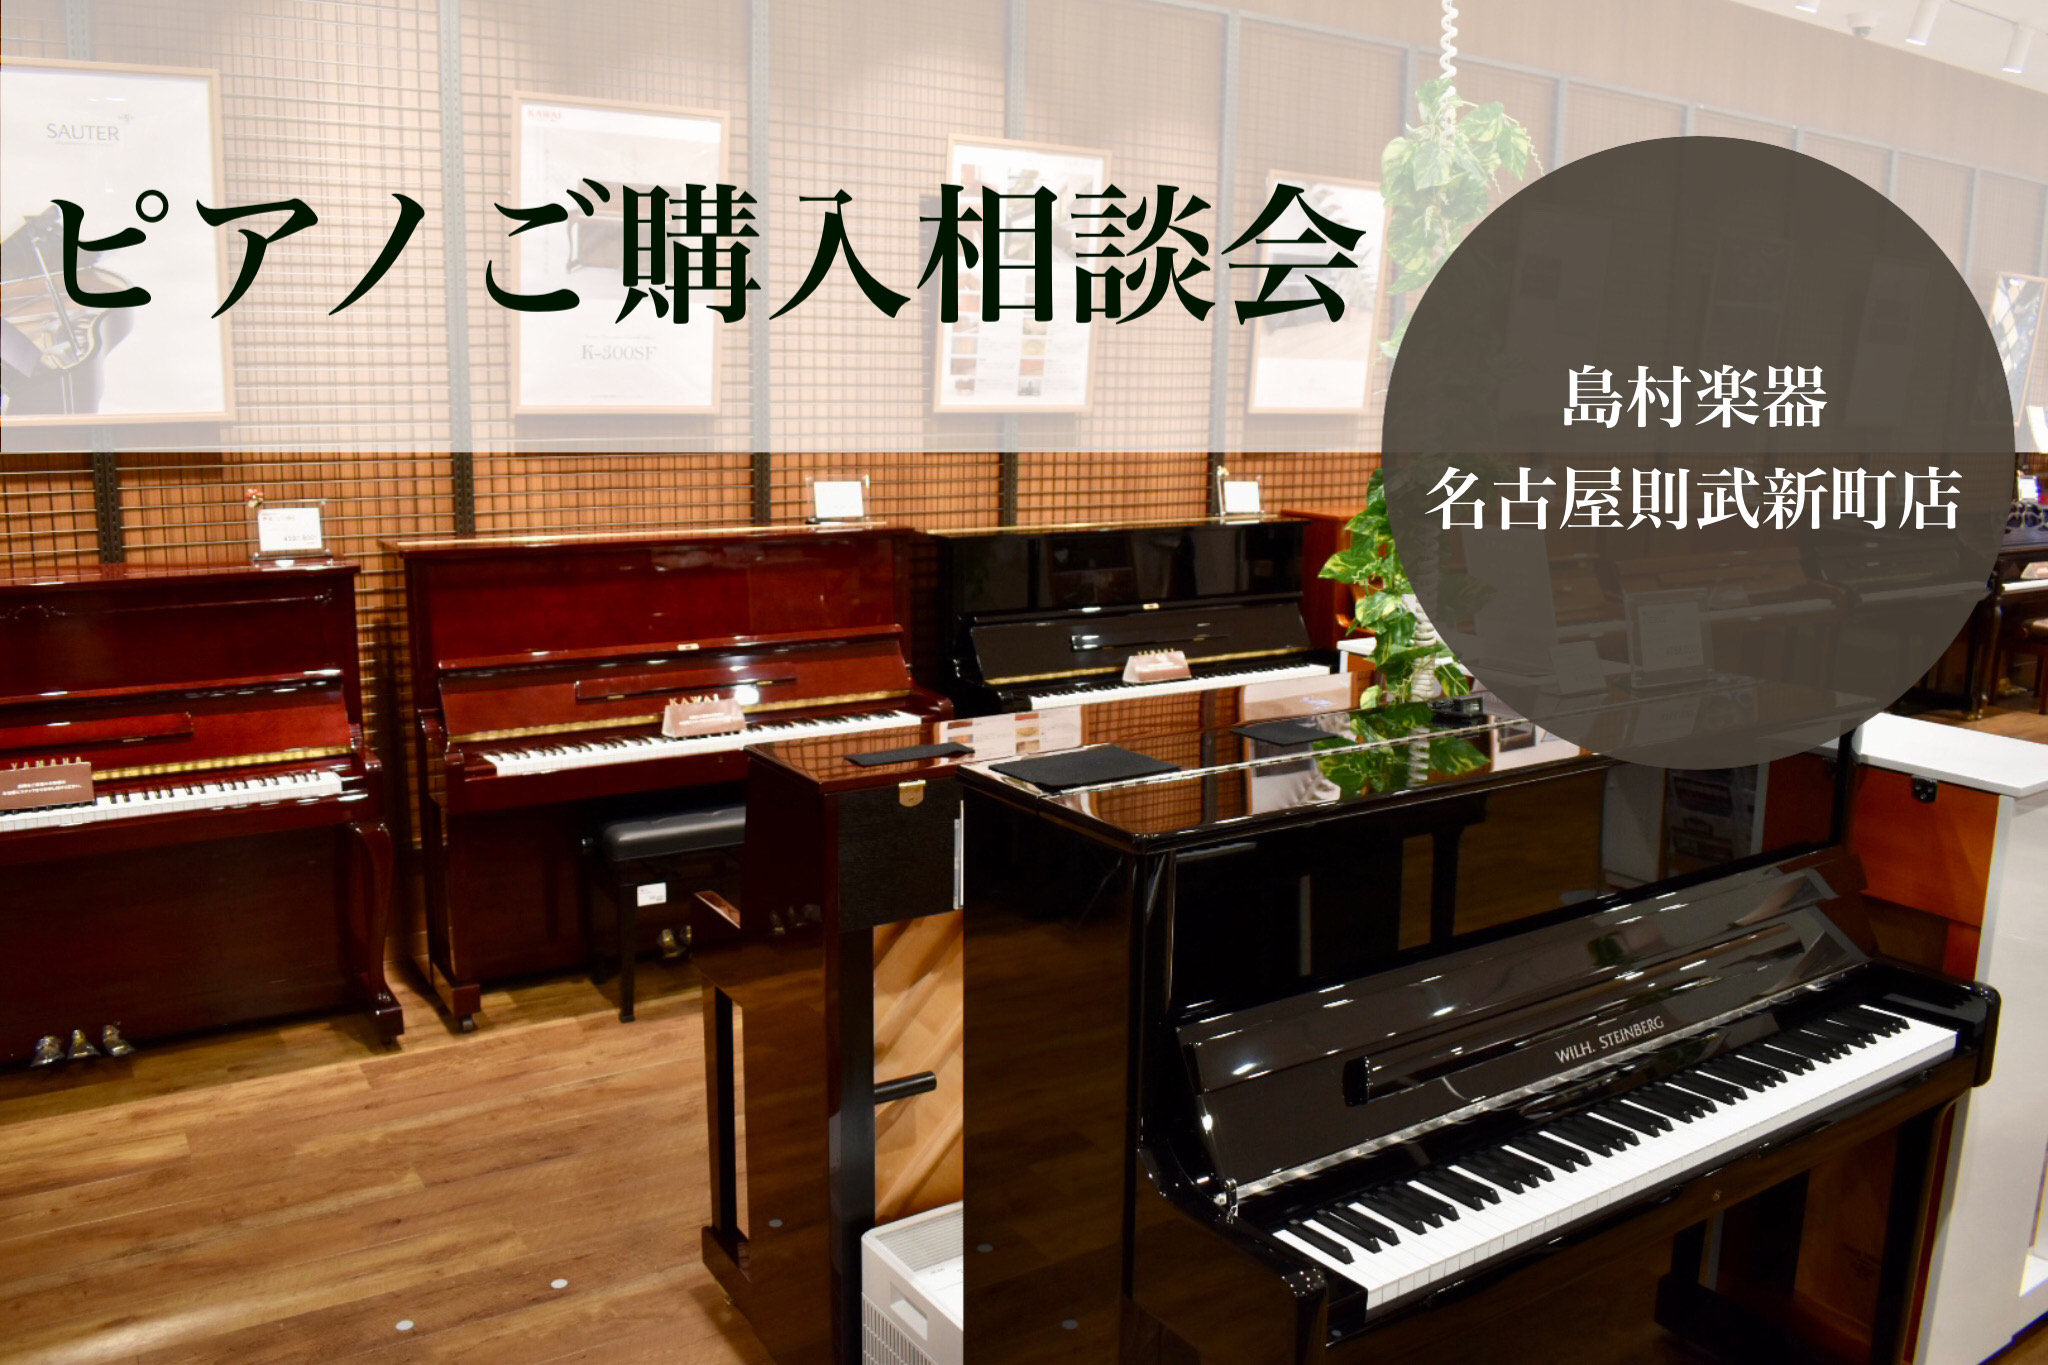 名古屋則武新町店は、アップライトピアノ～電子ピアノまで総台数40台以上展示。アップライトピアノ・電子ピアノともに、国内外の様々なメーカーの機種を幅広くラインナップしております。沢山のピアノの中から、ピアノアドバイザーがお客様にぴったりなピアノ選びをお手伝いいたします。ご購入前のお悩み相談も大歓迎！お […]